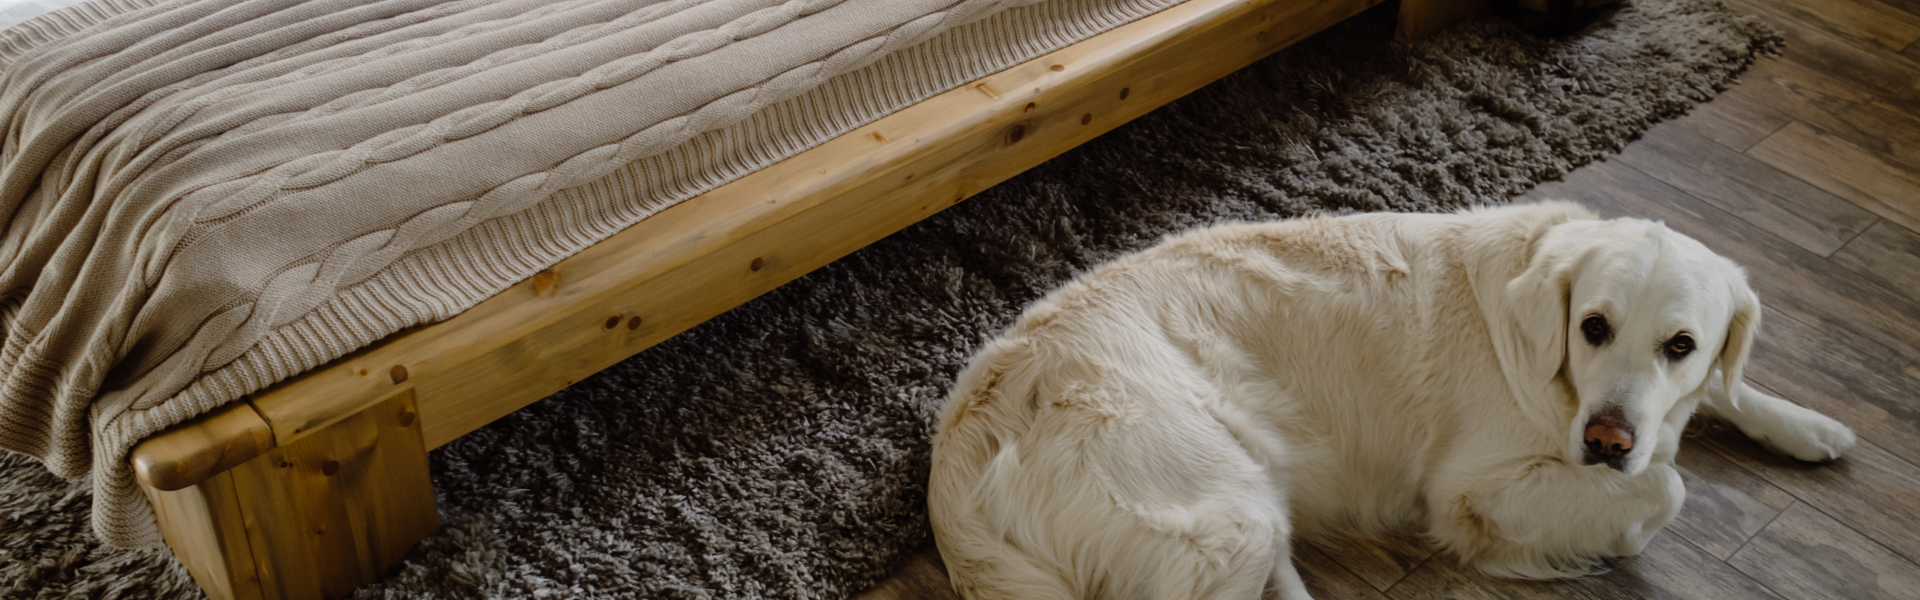 Dog infront of mattress